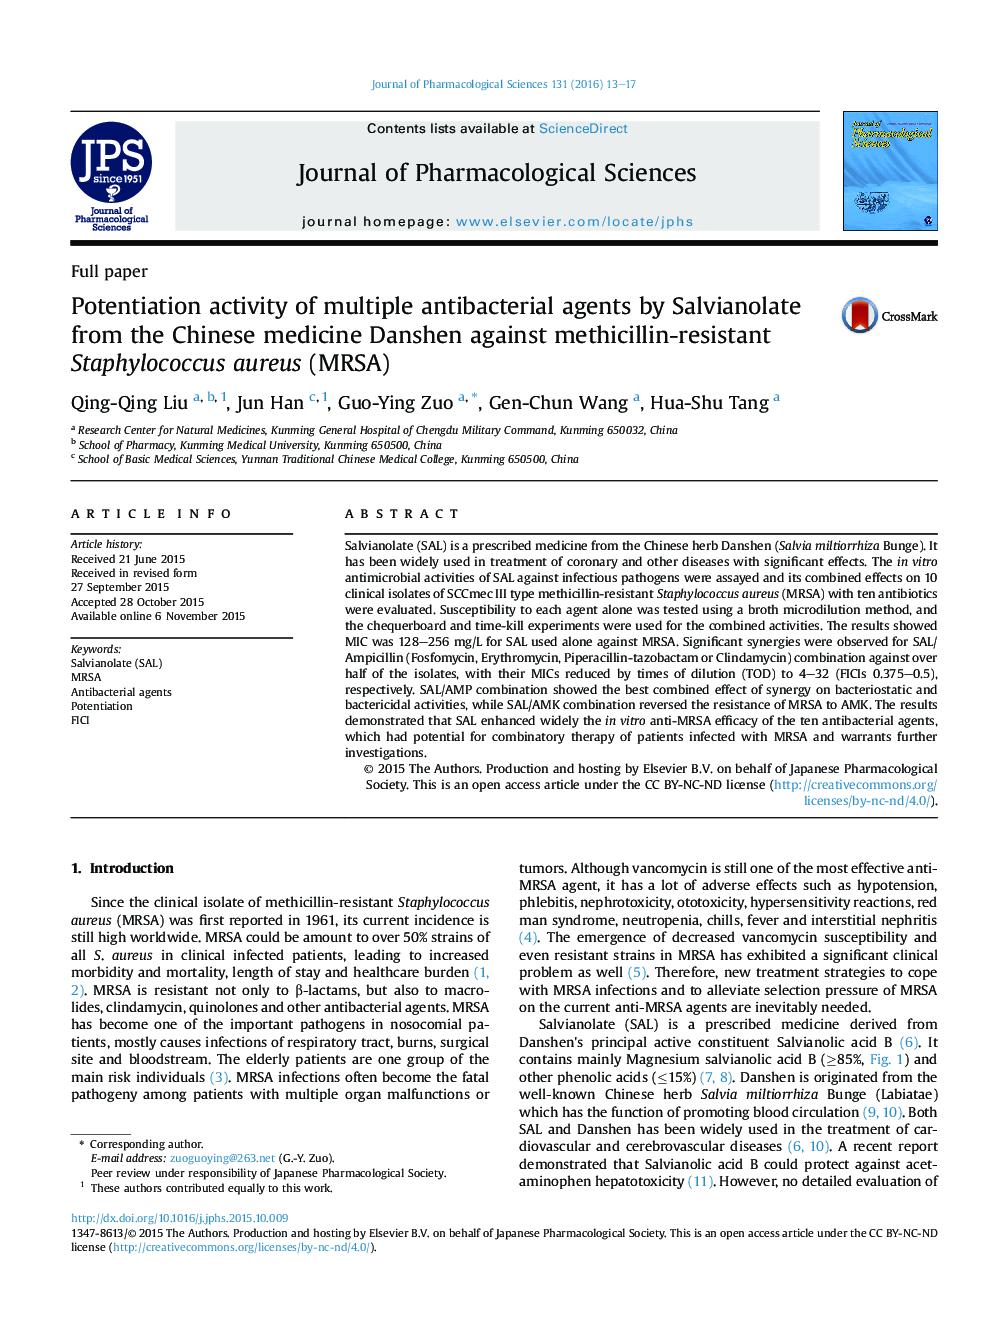 فعالیت پتانسیلی عوامل متعدد ضدباکتری توسط Salvianolate از طب چینی Danshen در برابر استافیلوکوک اورئوس مقاوم به methicillin(MRSA)